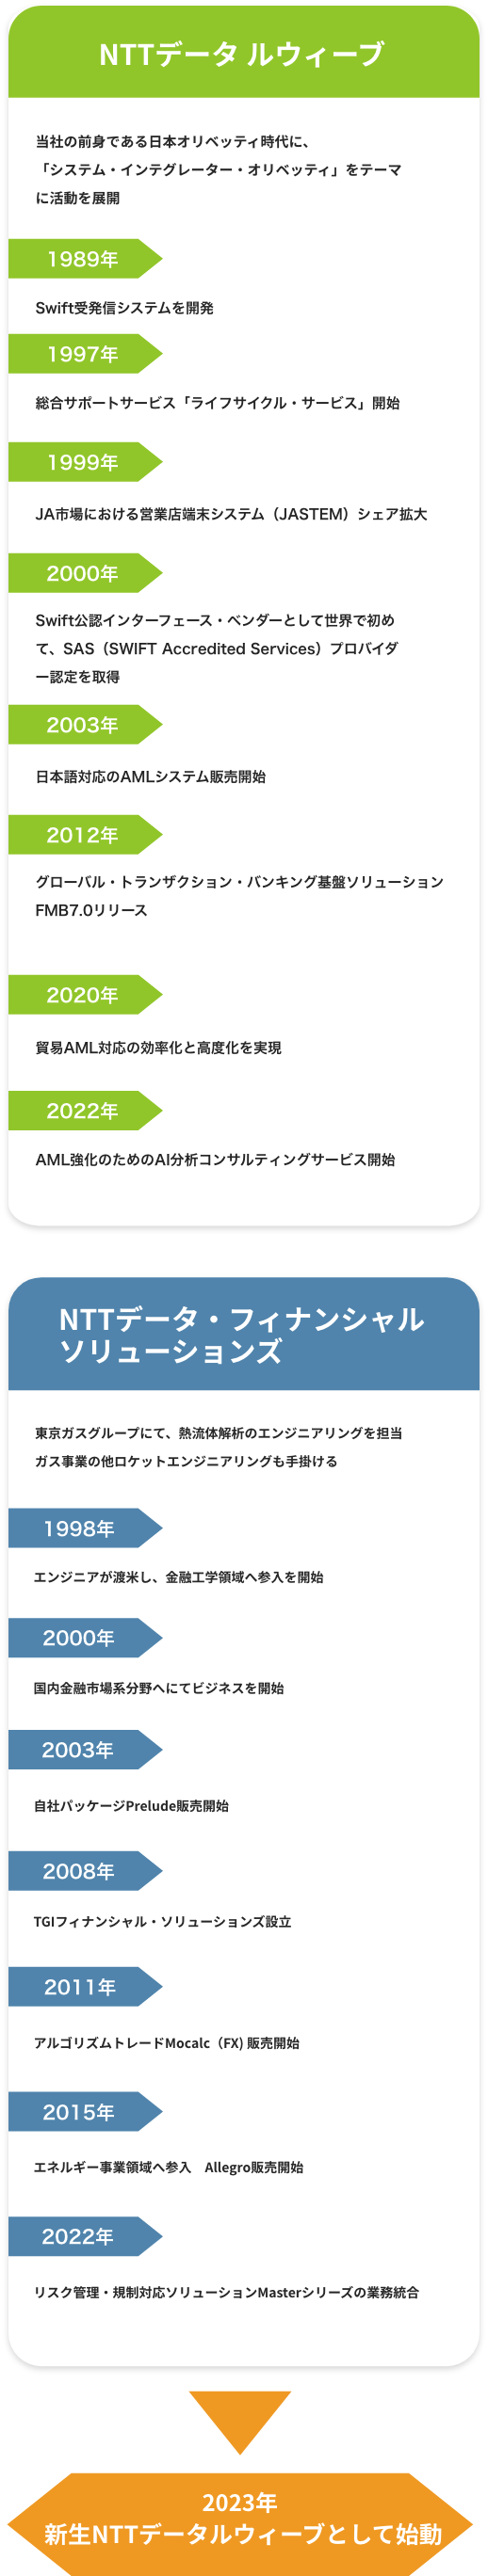 両社の歴史 2023年NTTデータルウィーブへ統合